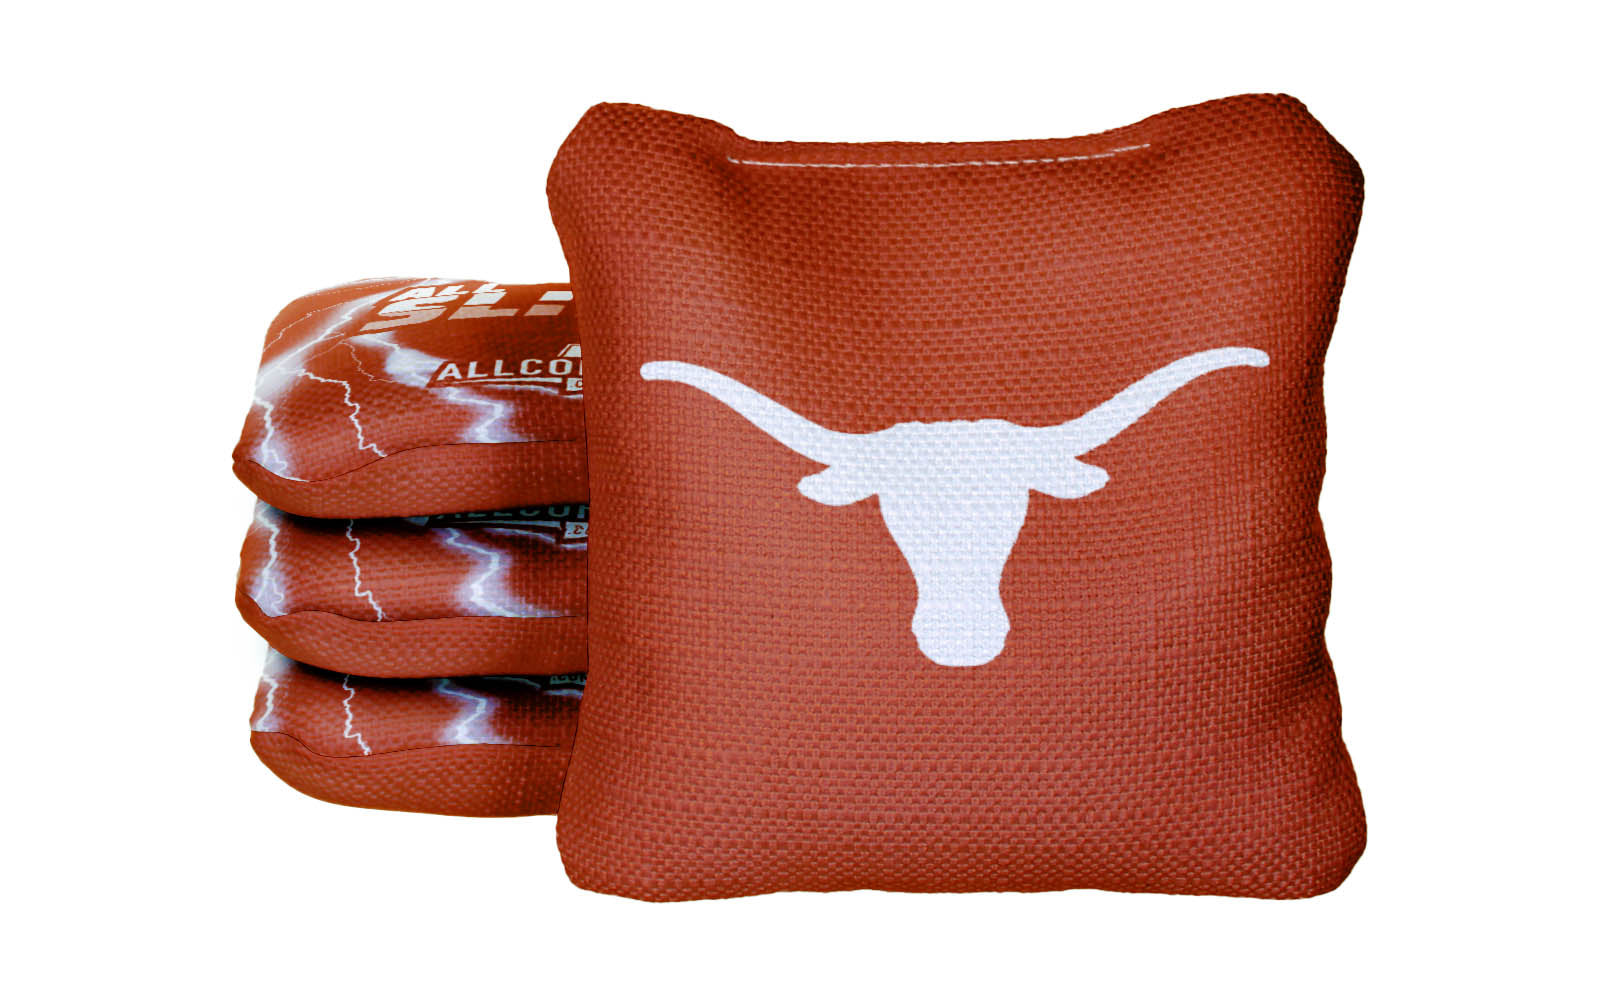 Officially Licensed Collegiate Cornhole Bags - AllCornhole All Slide 2.0 - Set of 4 - University of Texas at Austin